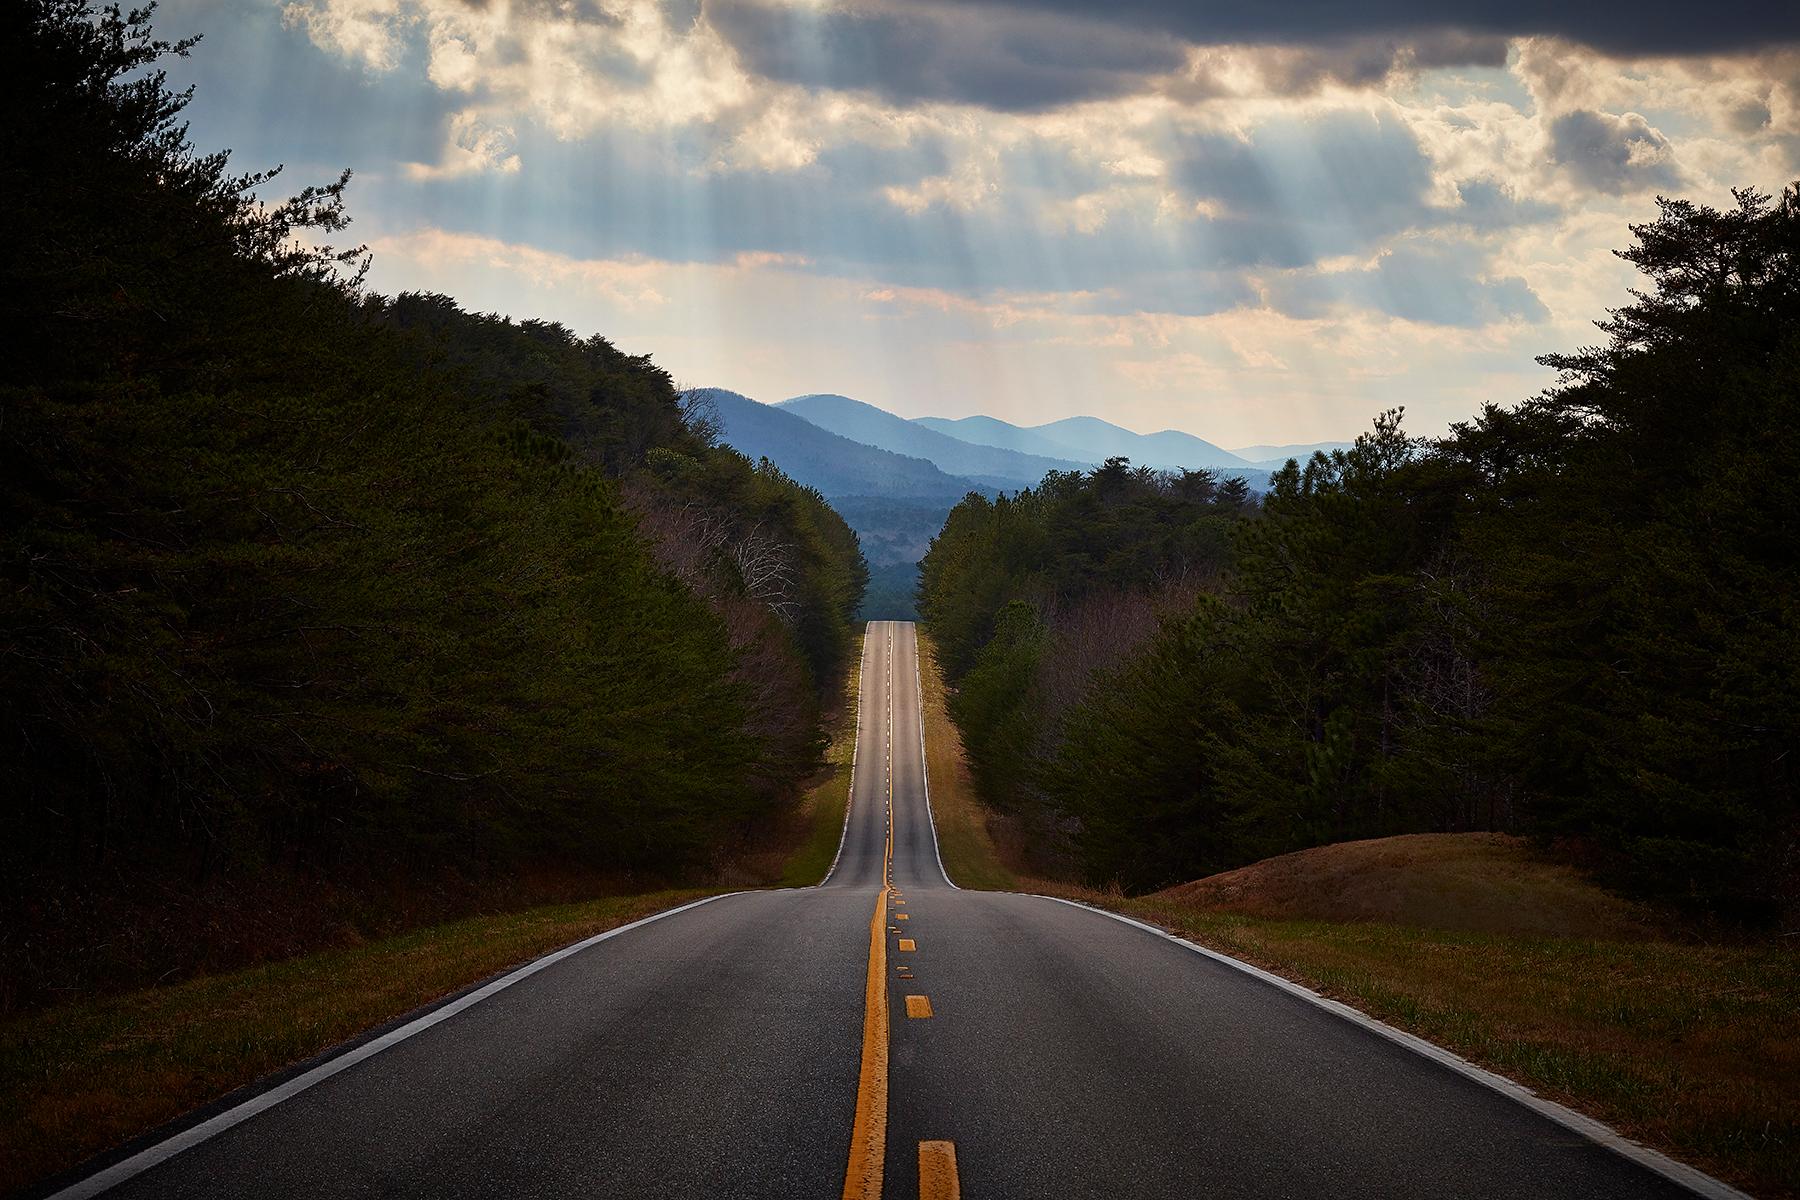 Peter Andrew Lusztyk – Alabama Highway, Fotografie 2021, Nachdruck